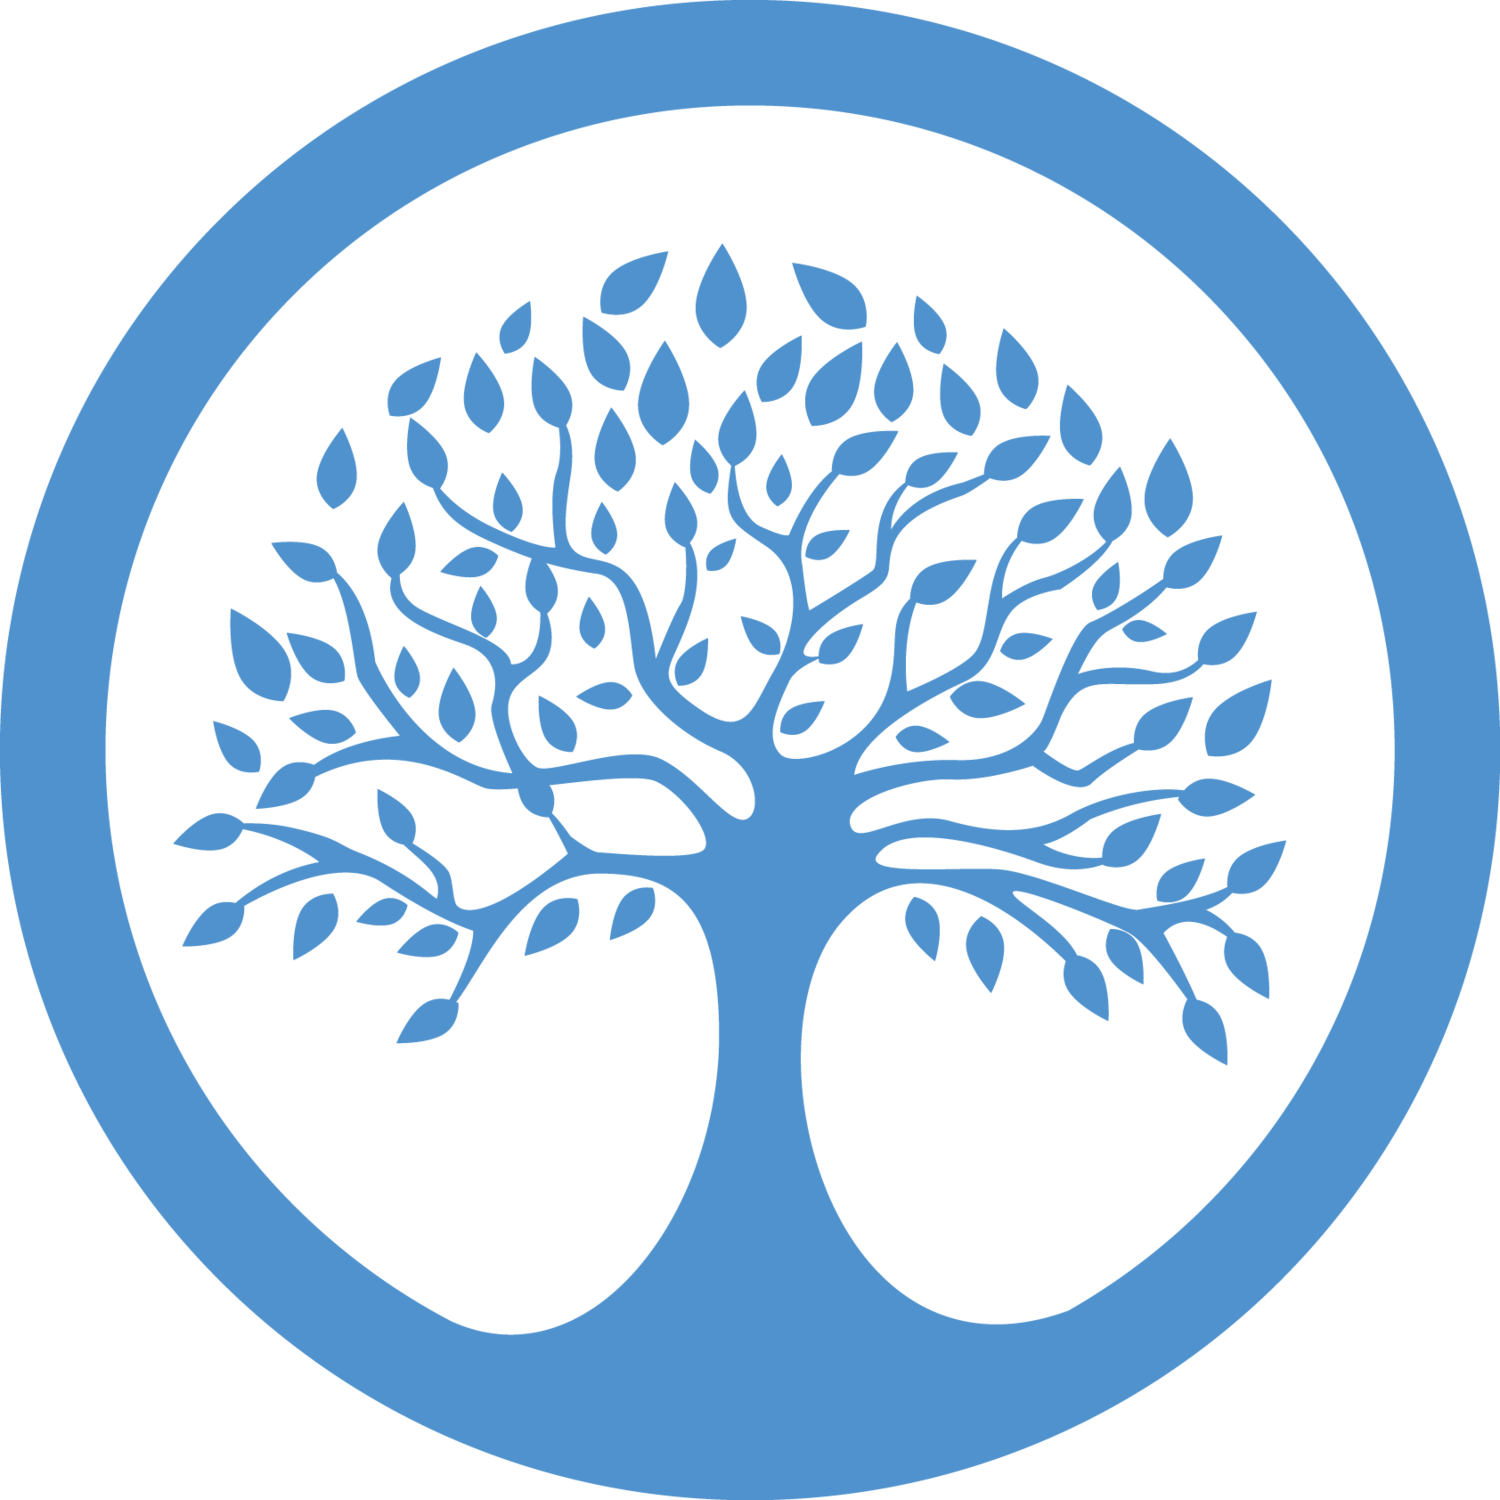 Дерево символ. Дерево жизни символ. Дерево в круге символ. Логотип дерево в круге. Знак дерево жизни